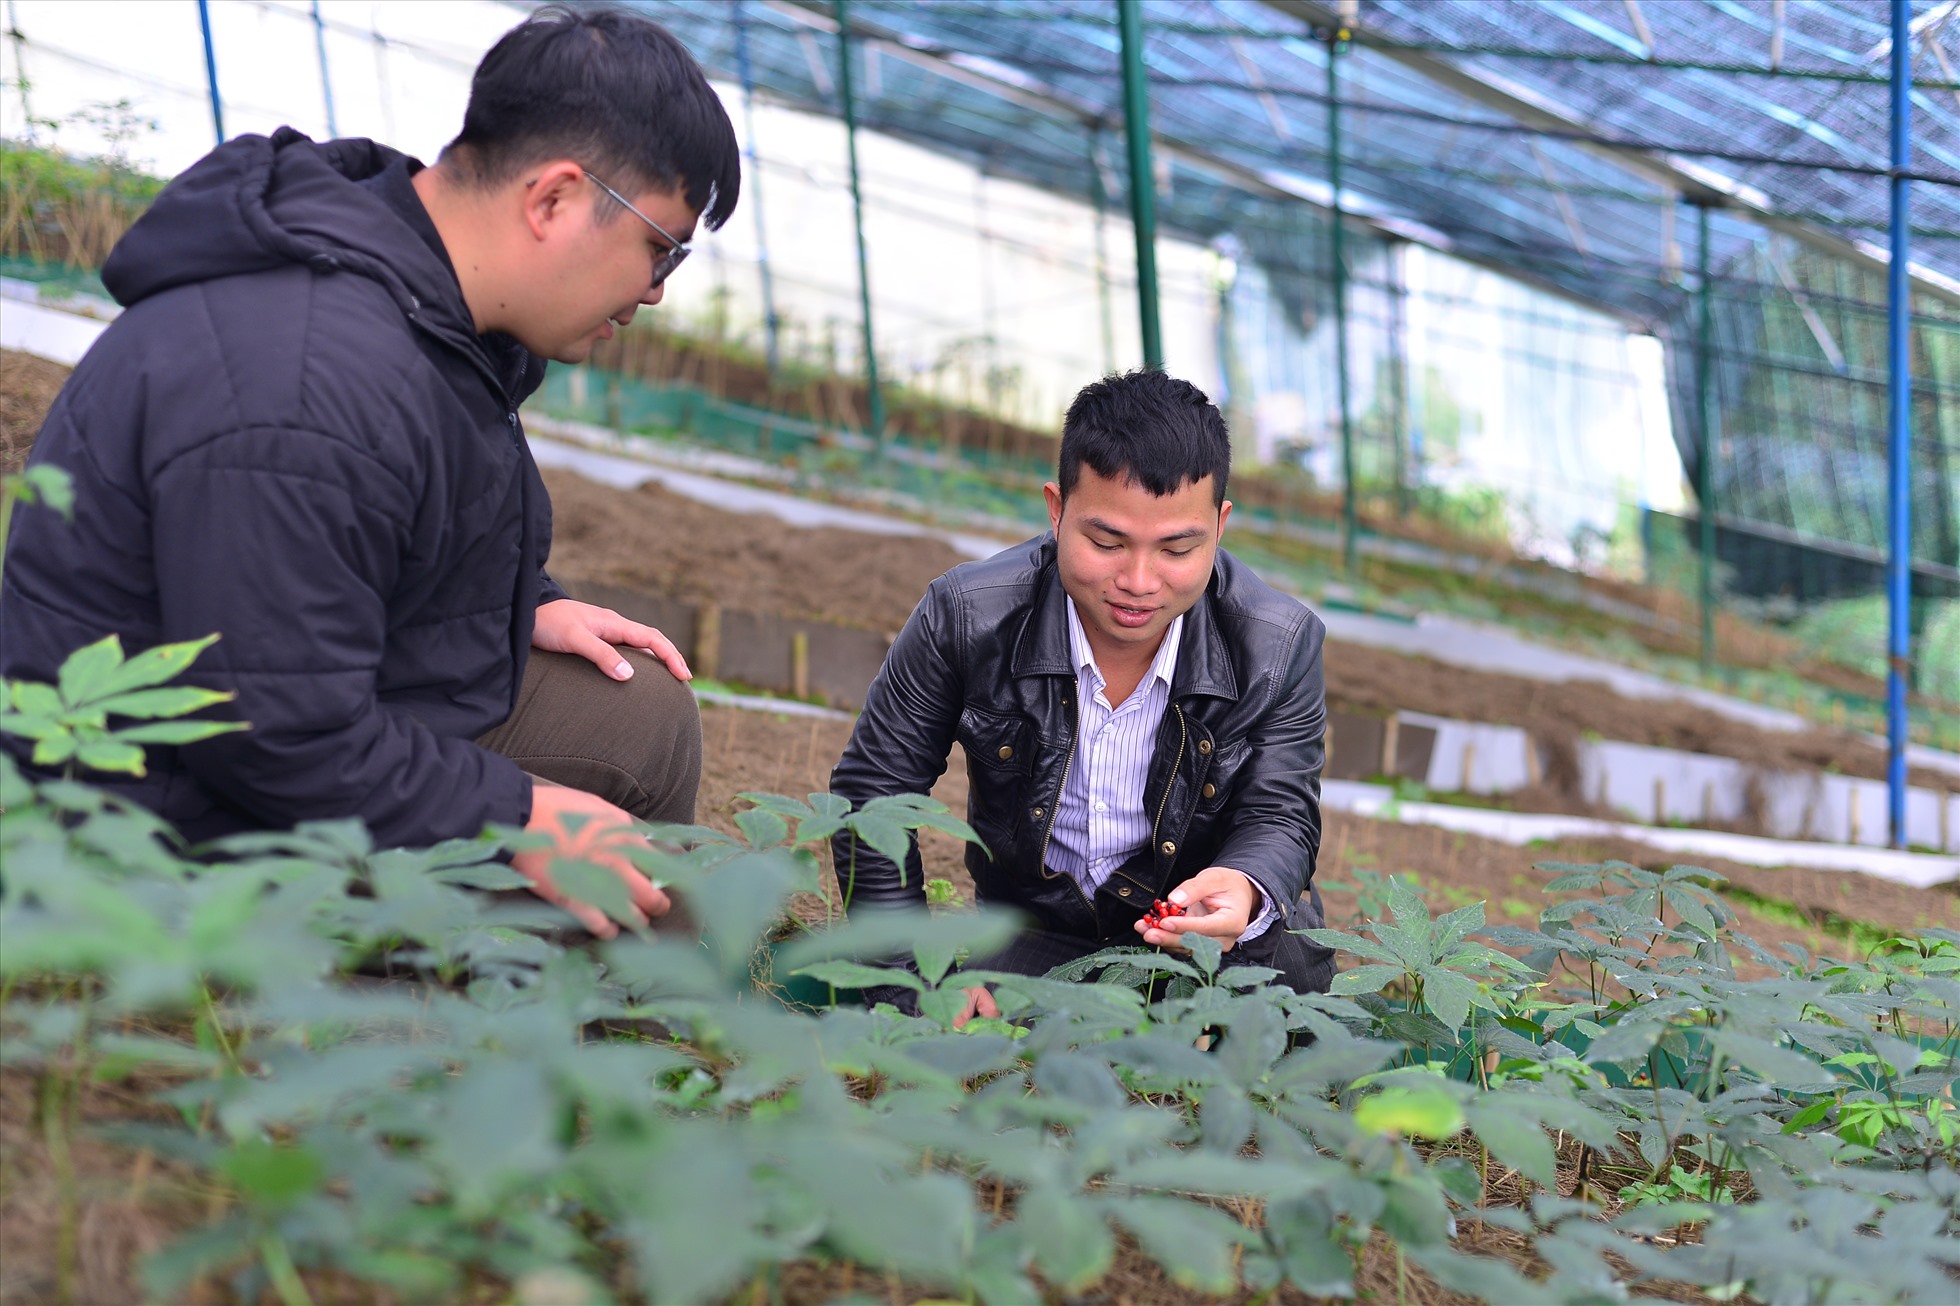 Mô hình phát triển cây dược liệu (Sâm ngọc linh) ở huyện Lạc Dương, tỉnh Lâm Đồng. Ảnh: Minh Hậu